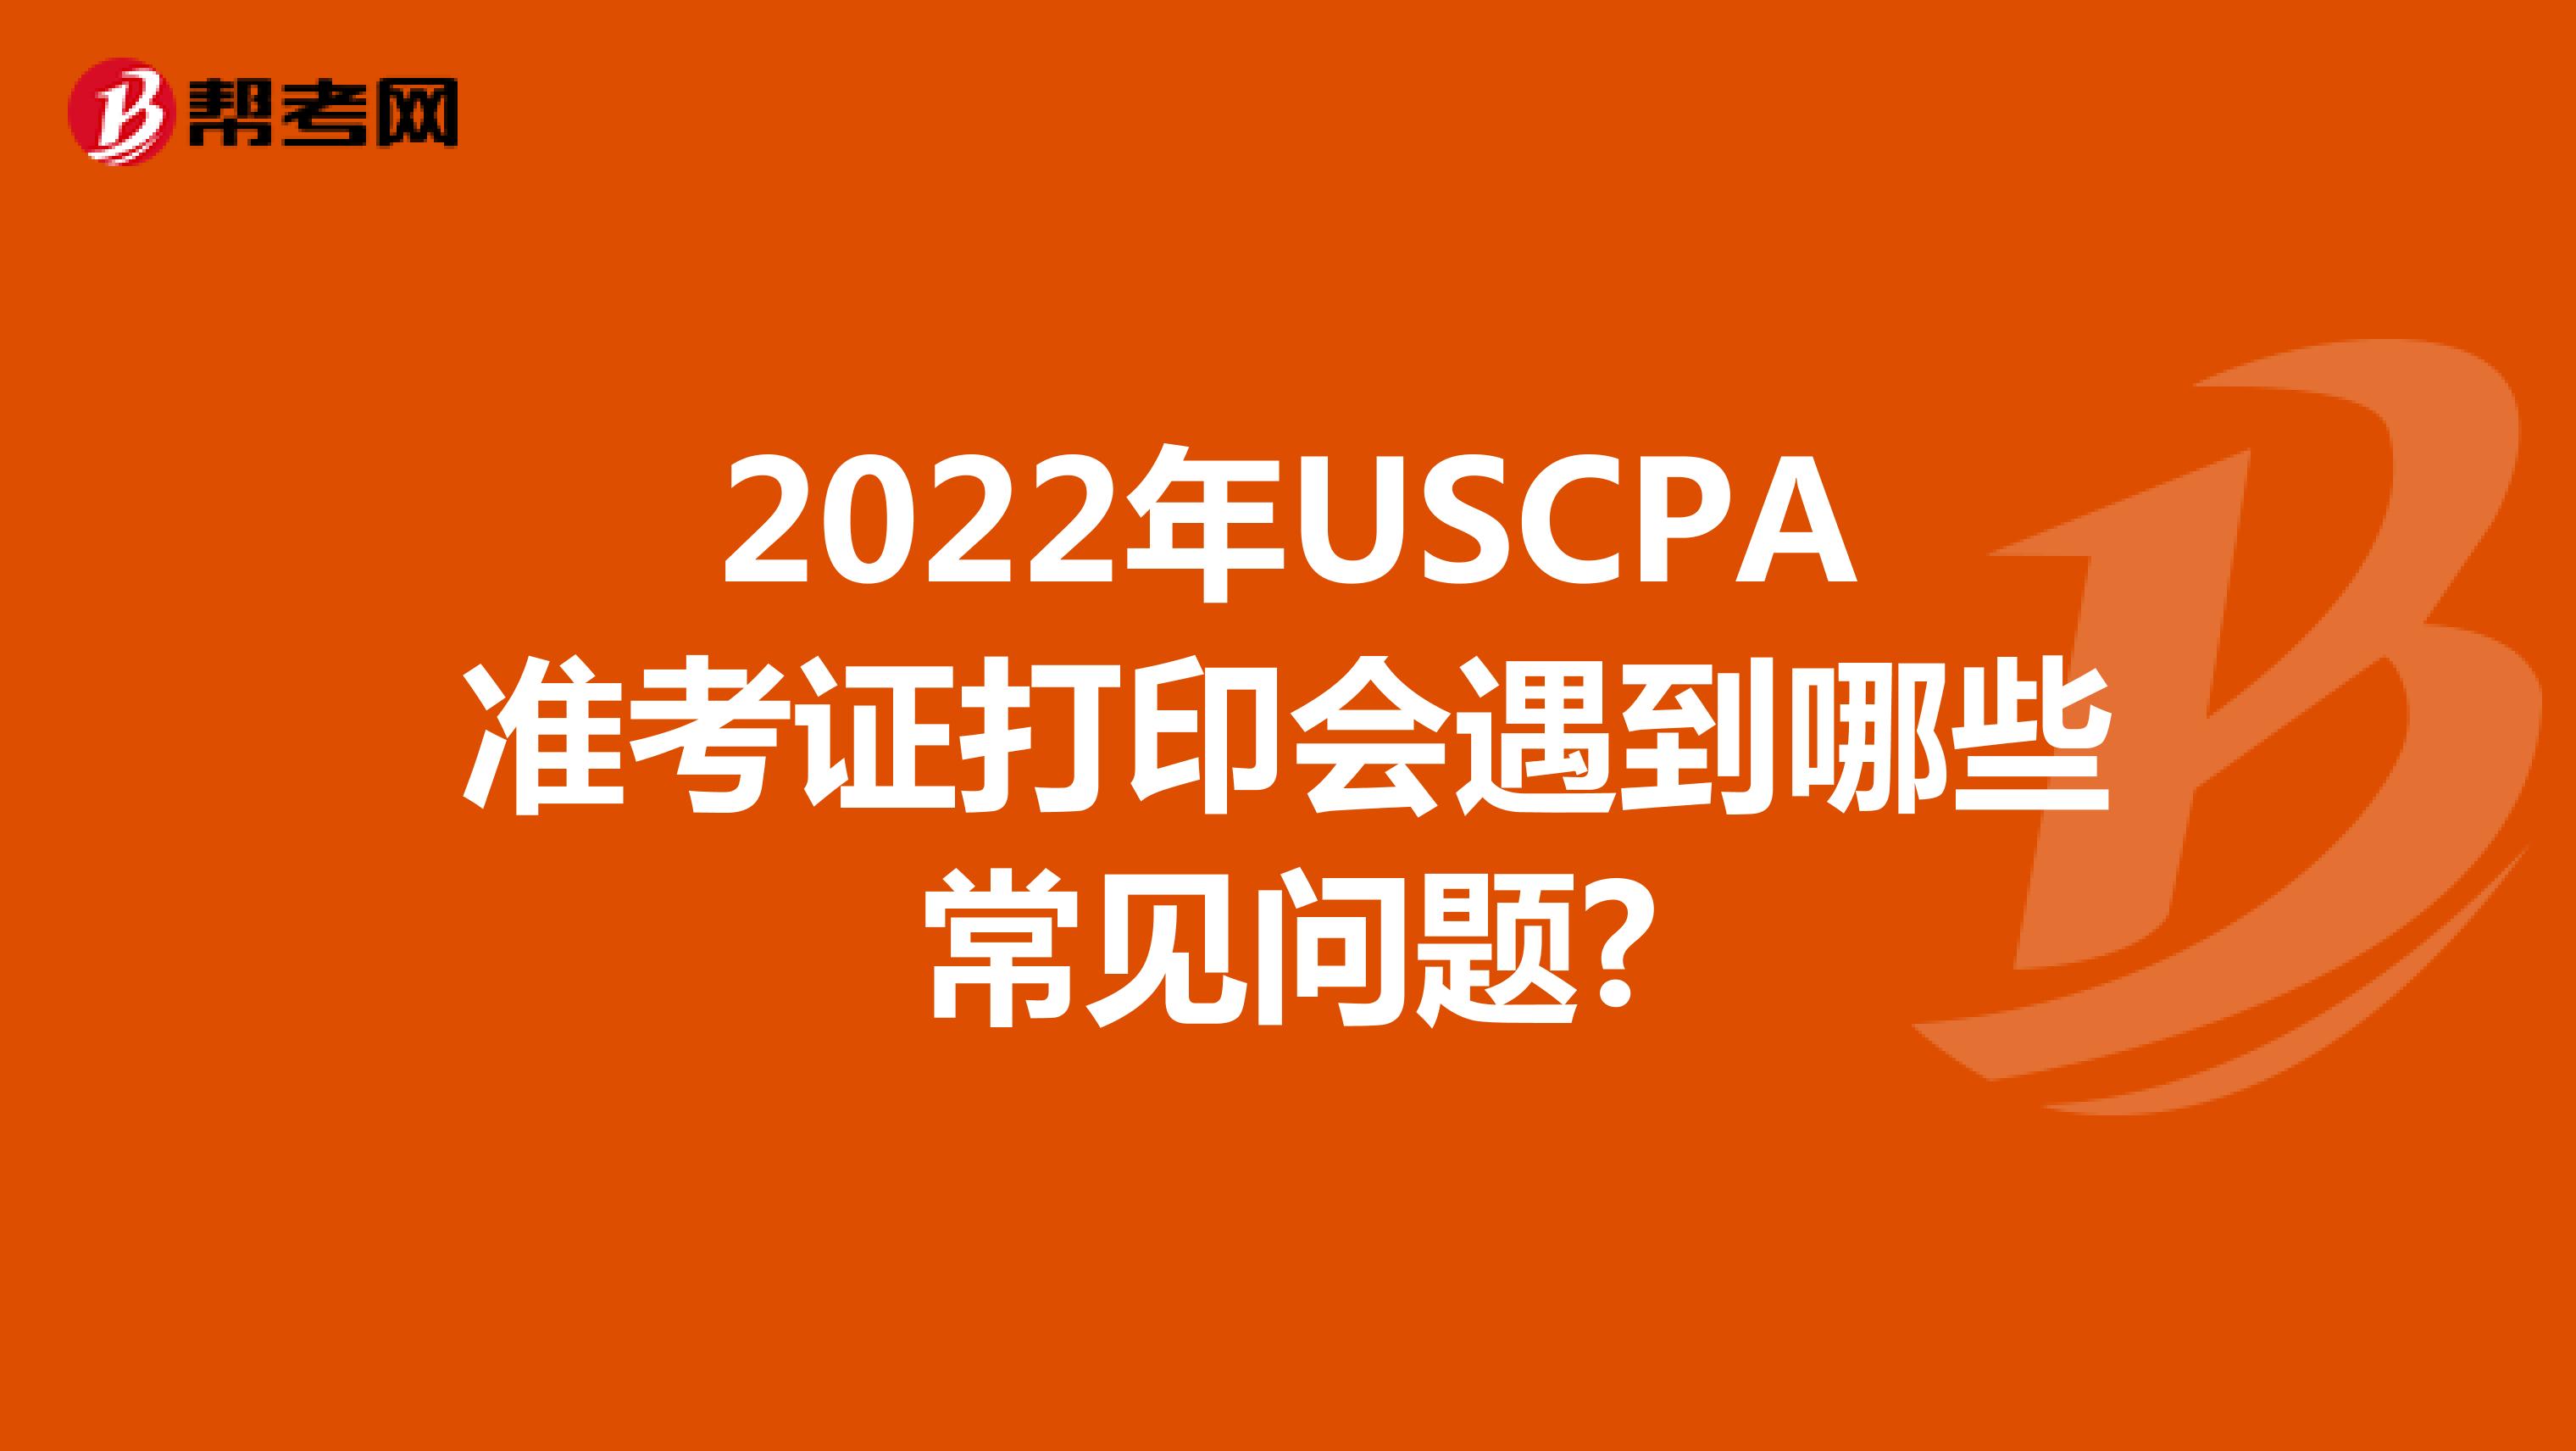 2022年USCPA准考证打印会遇到哪些常见问题?